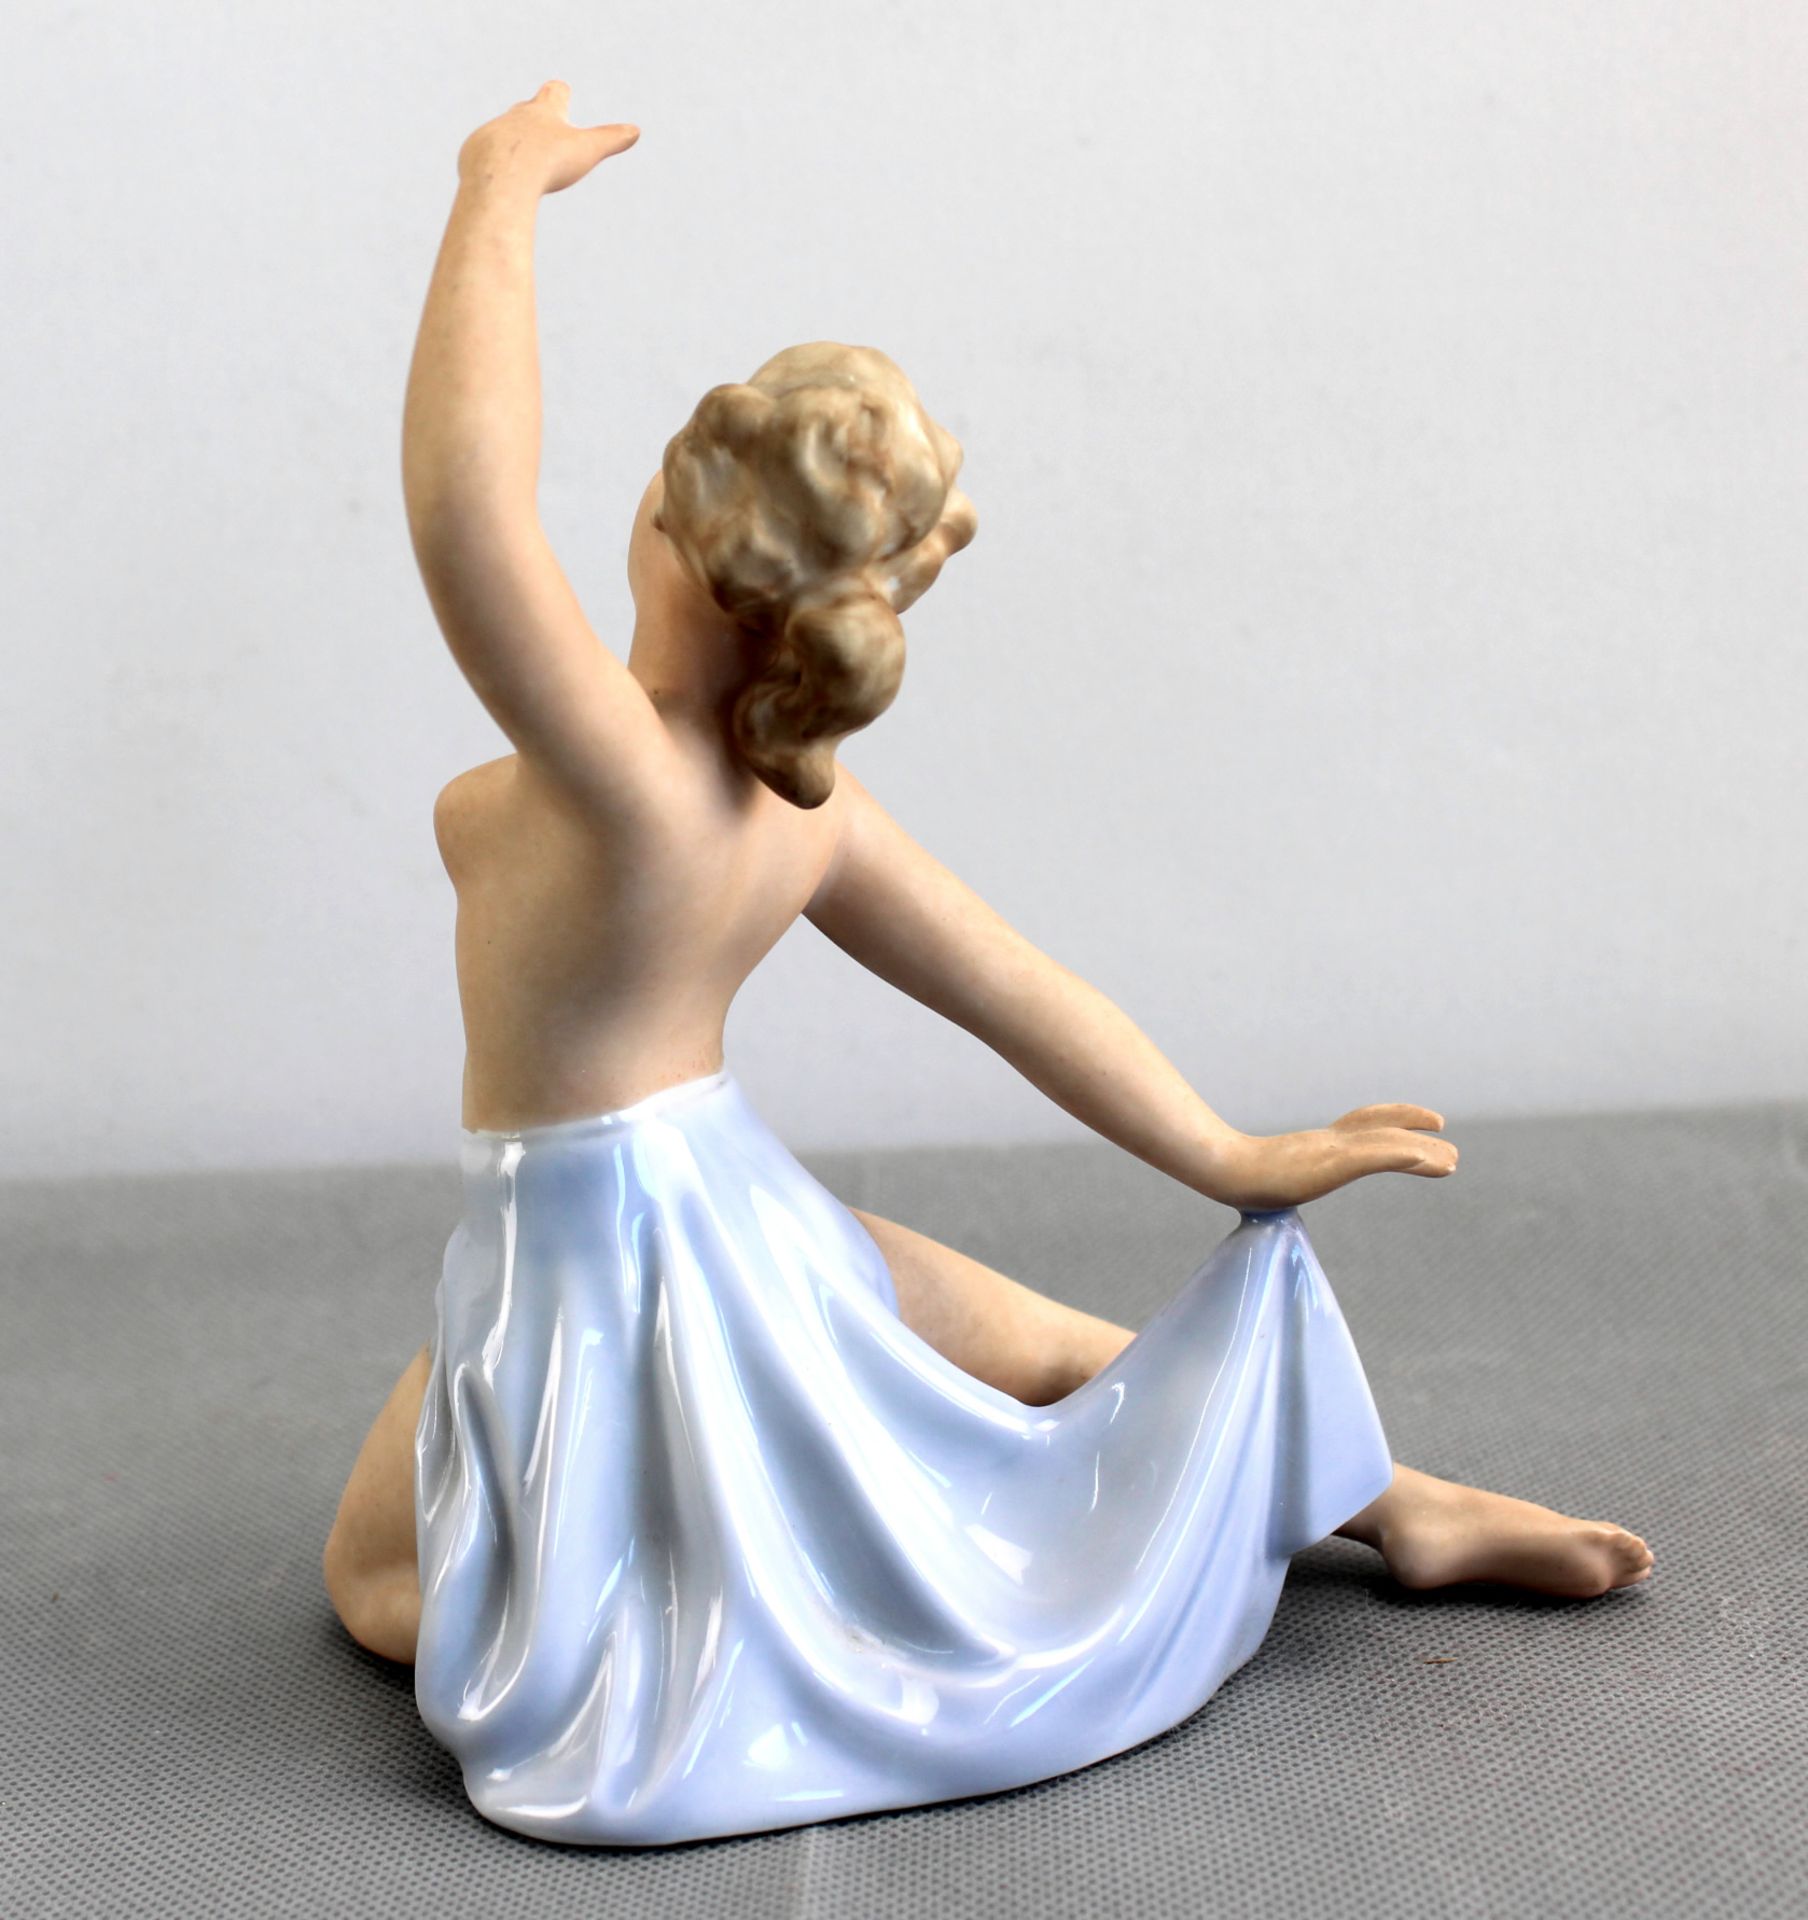 Porzellanfigur, Tänzerin in schwingendem Rock, Gerold & Co. Tettau, Mod. 6446 - Bild 3 aus 5